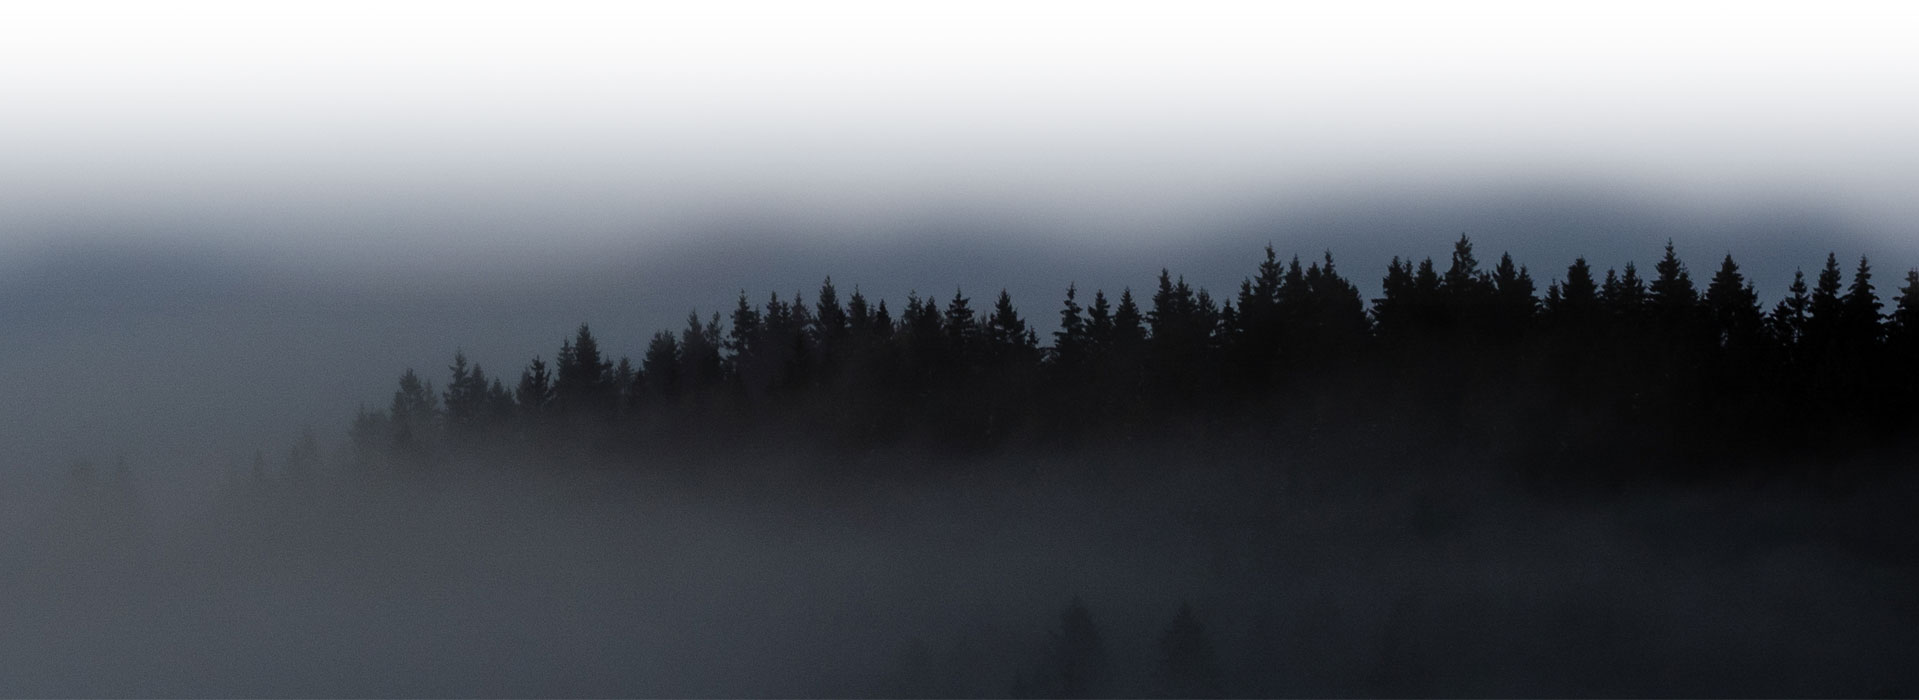 Die Silhouette einer Nadelbaumreihe ragt aus dichtem Nebel.